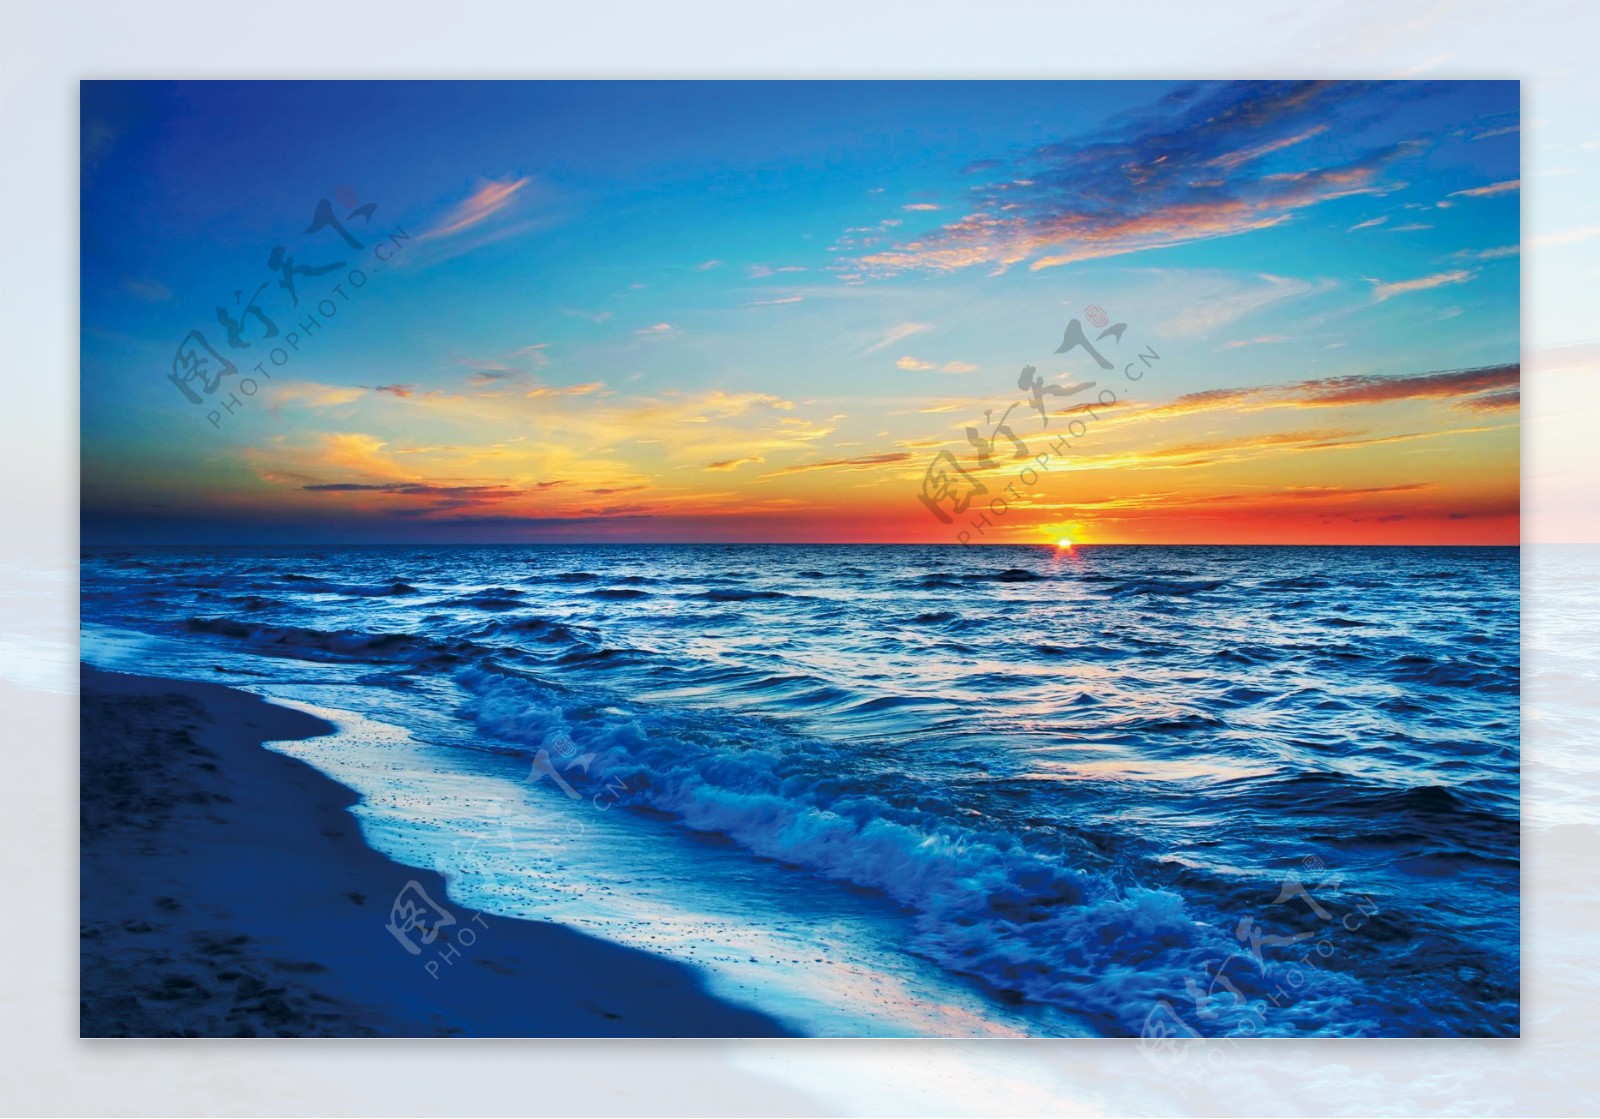 海边日落风景图片